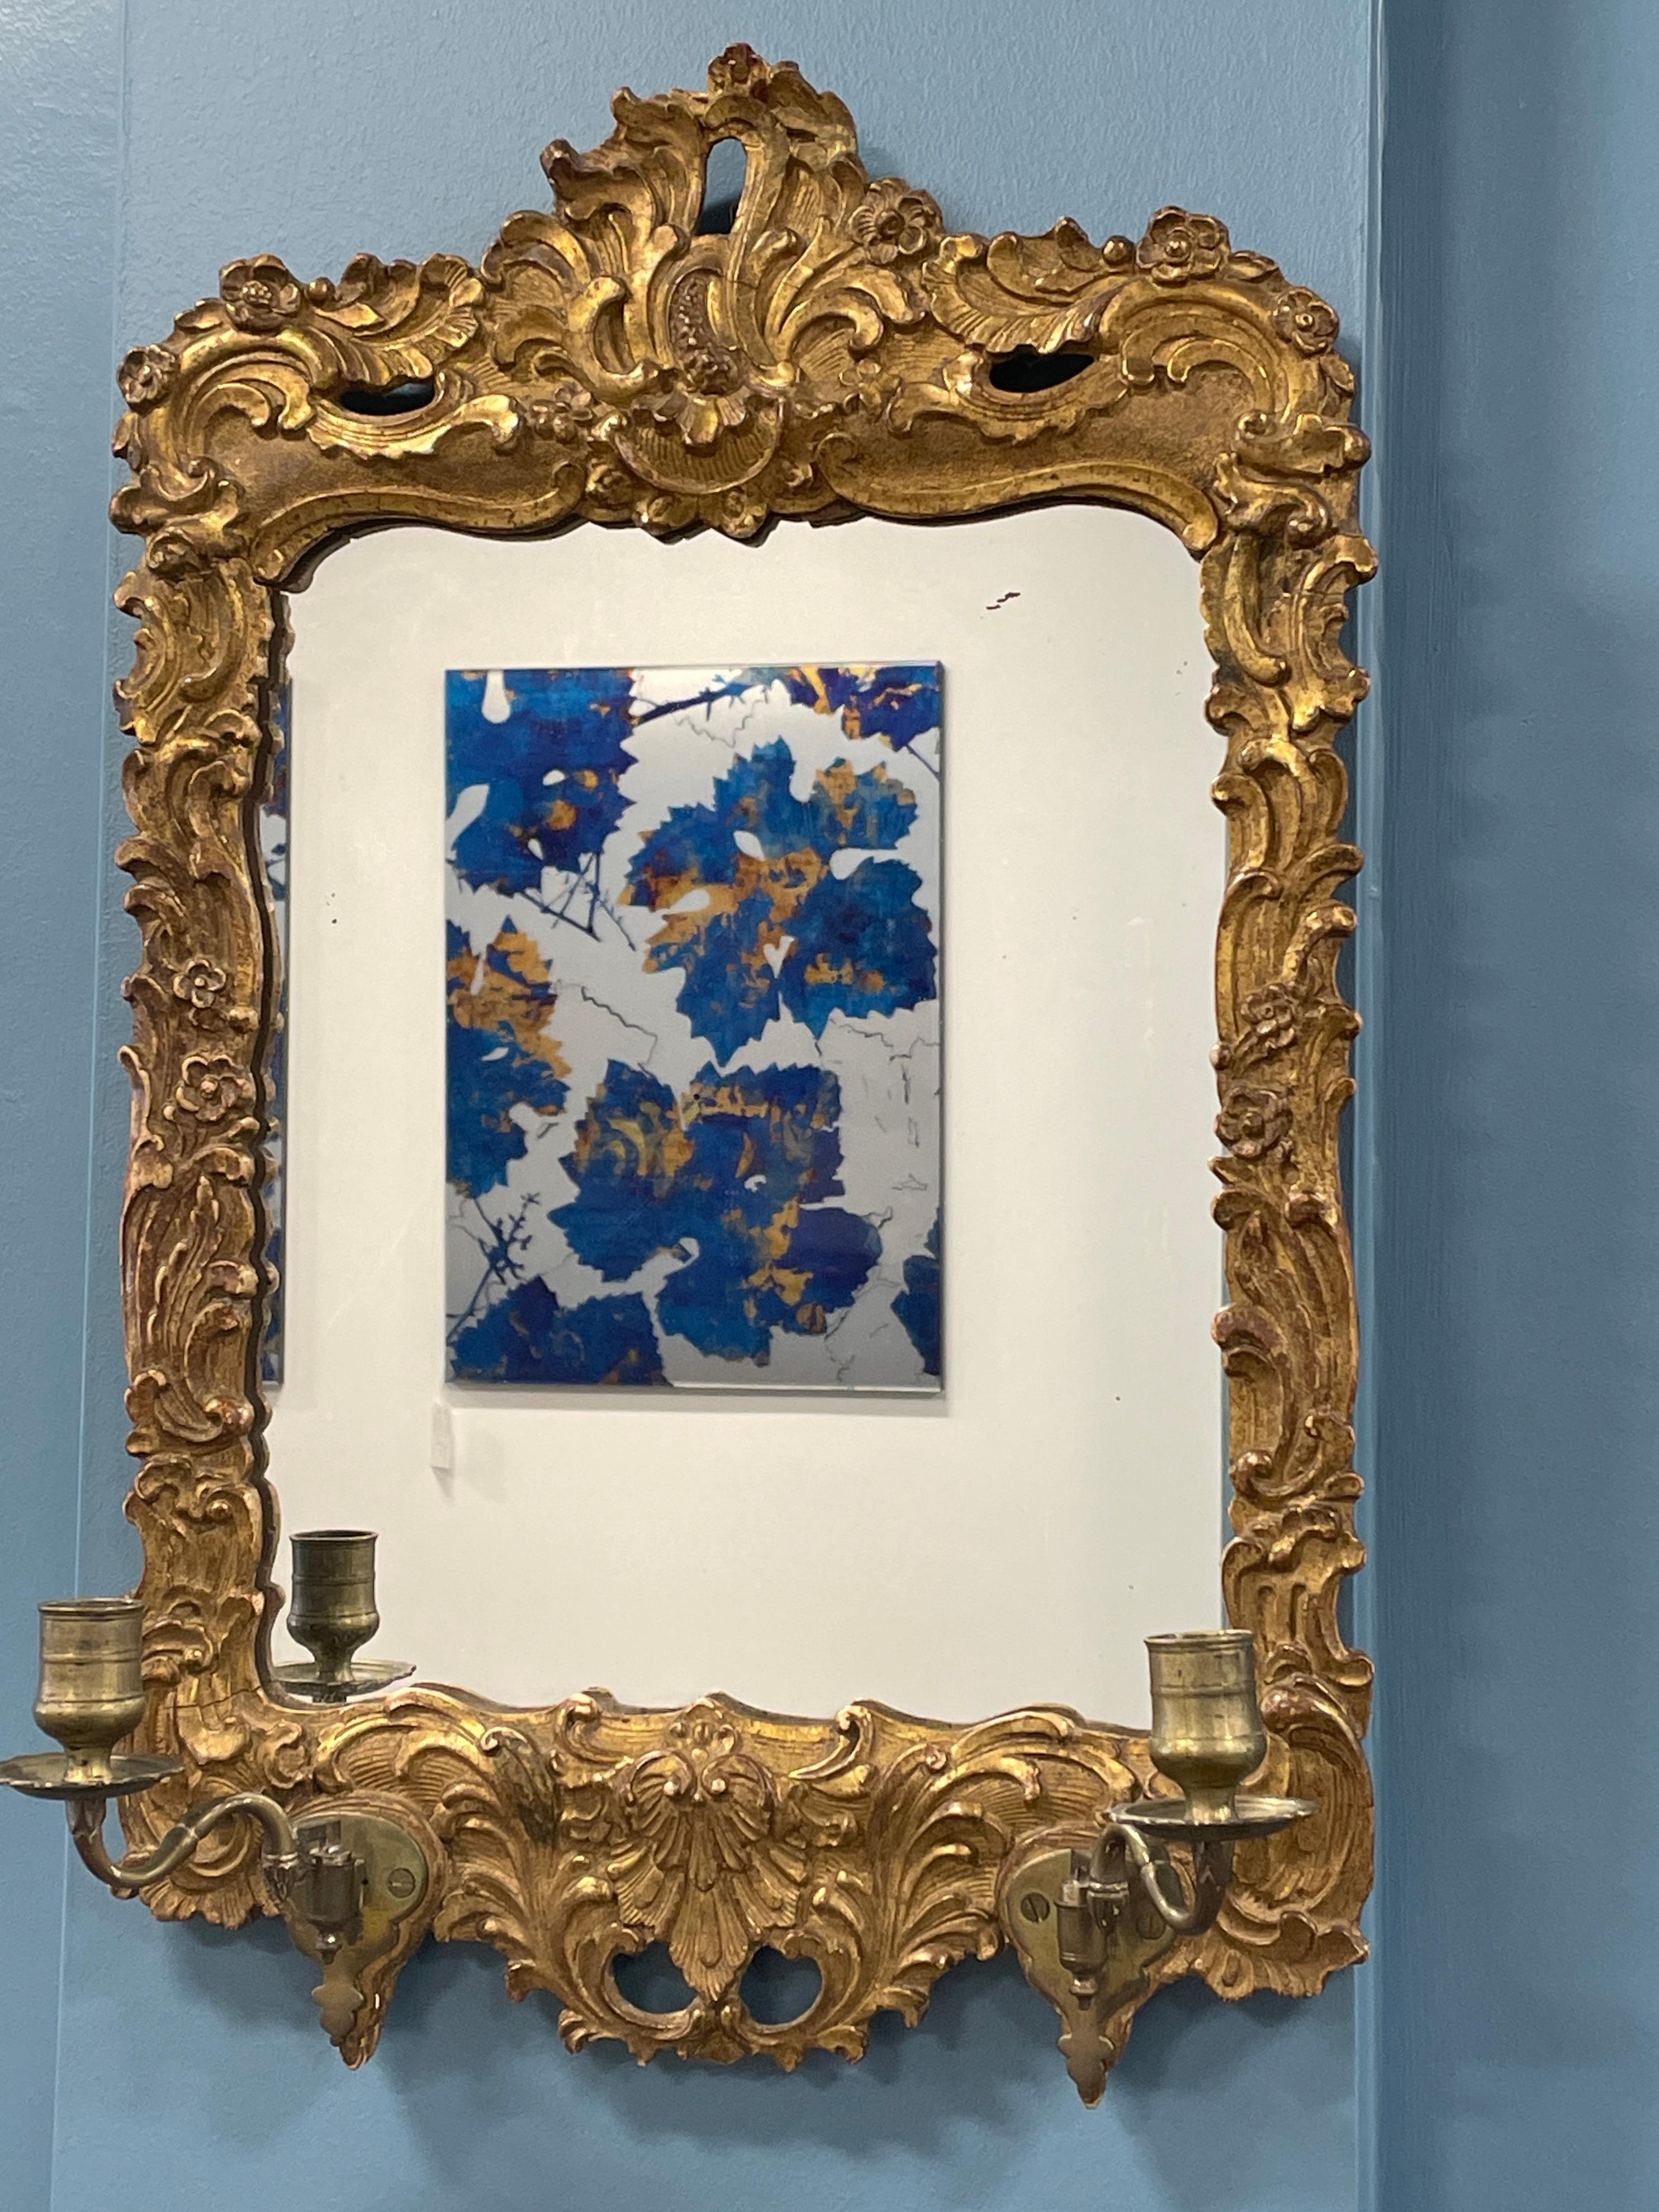 Élevez votre espace avec l'élégance intemporelle de cet authentique miroir baroque allemand orné de chandeliers. Fabriqué en bois doré, chaque détail est minutieusement sculpté à la main avec de délicats motifs de rocaille et de fleurs. Le verre du